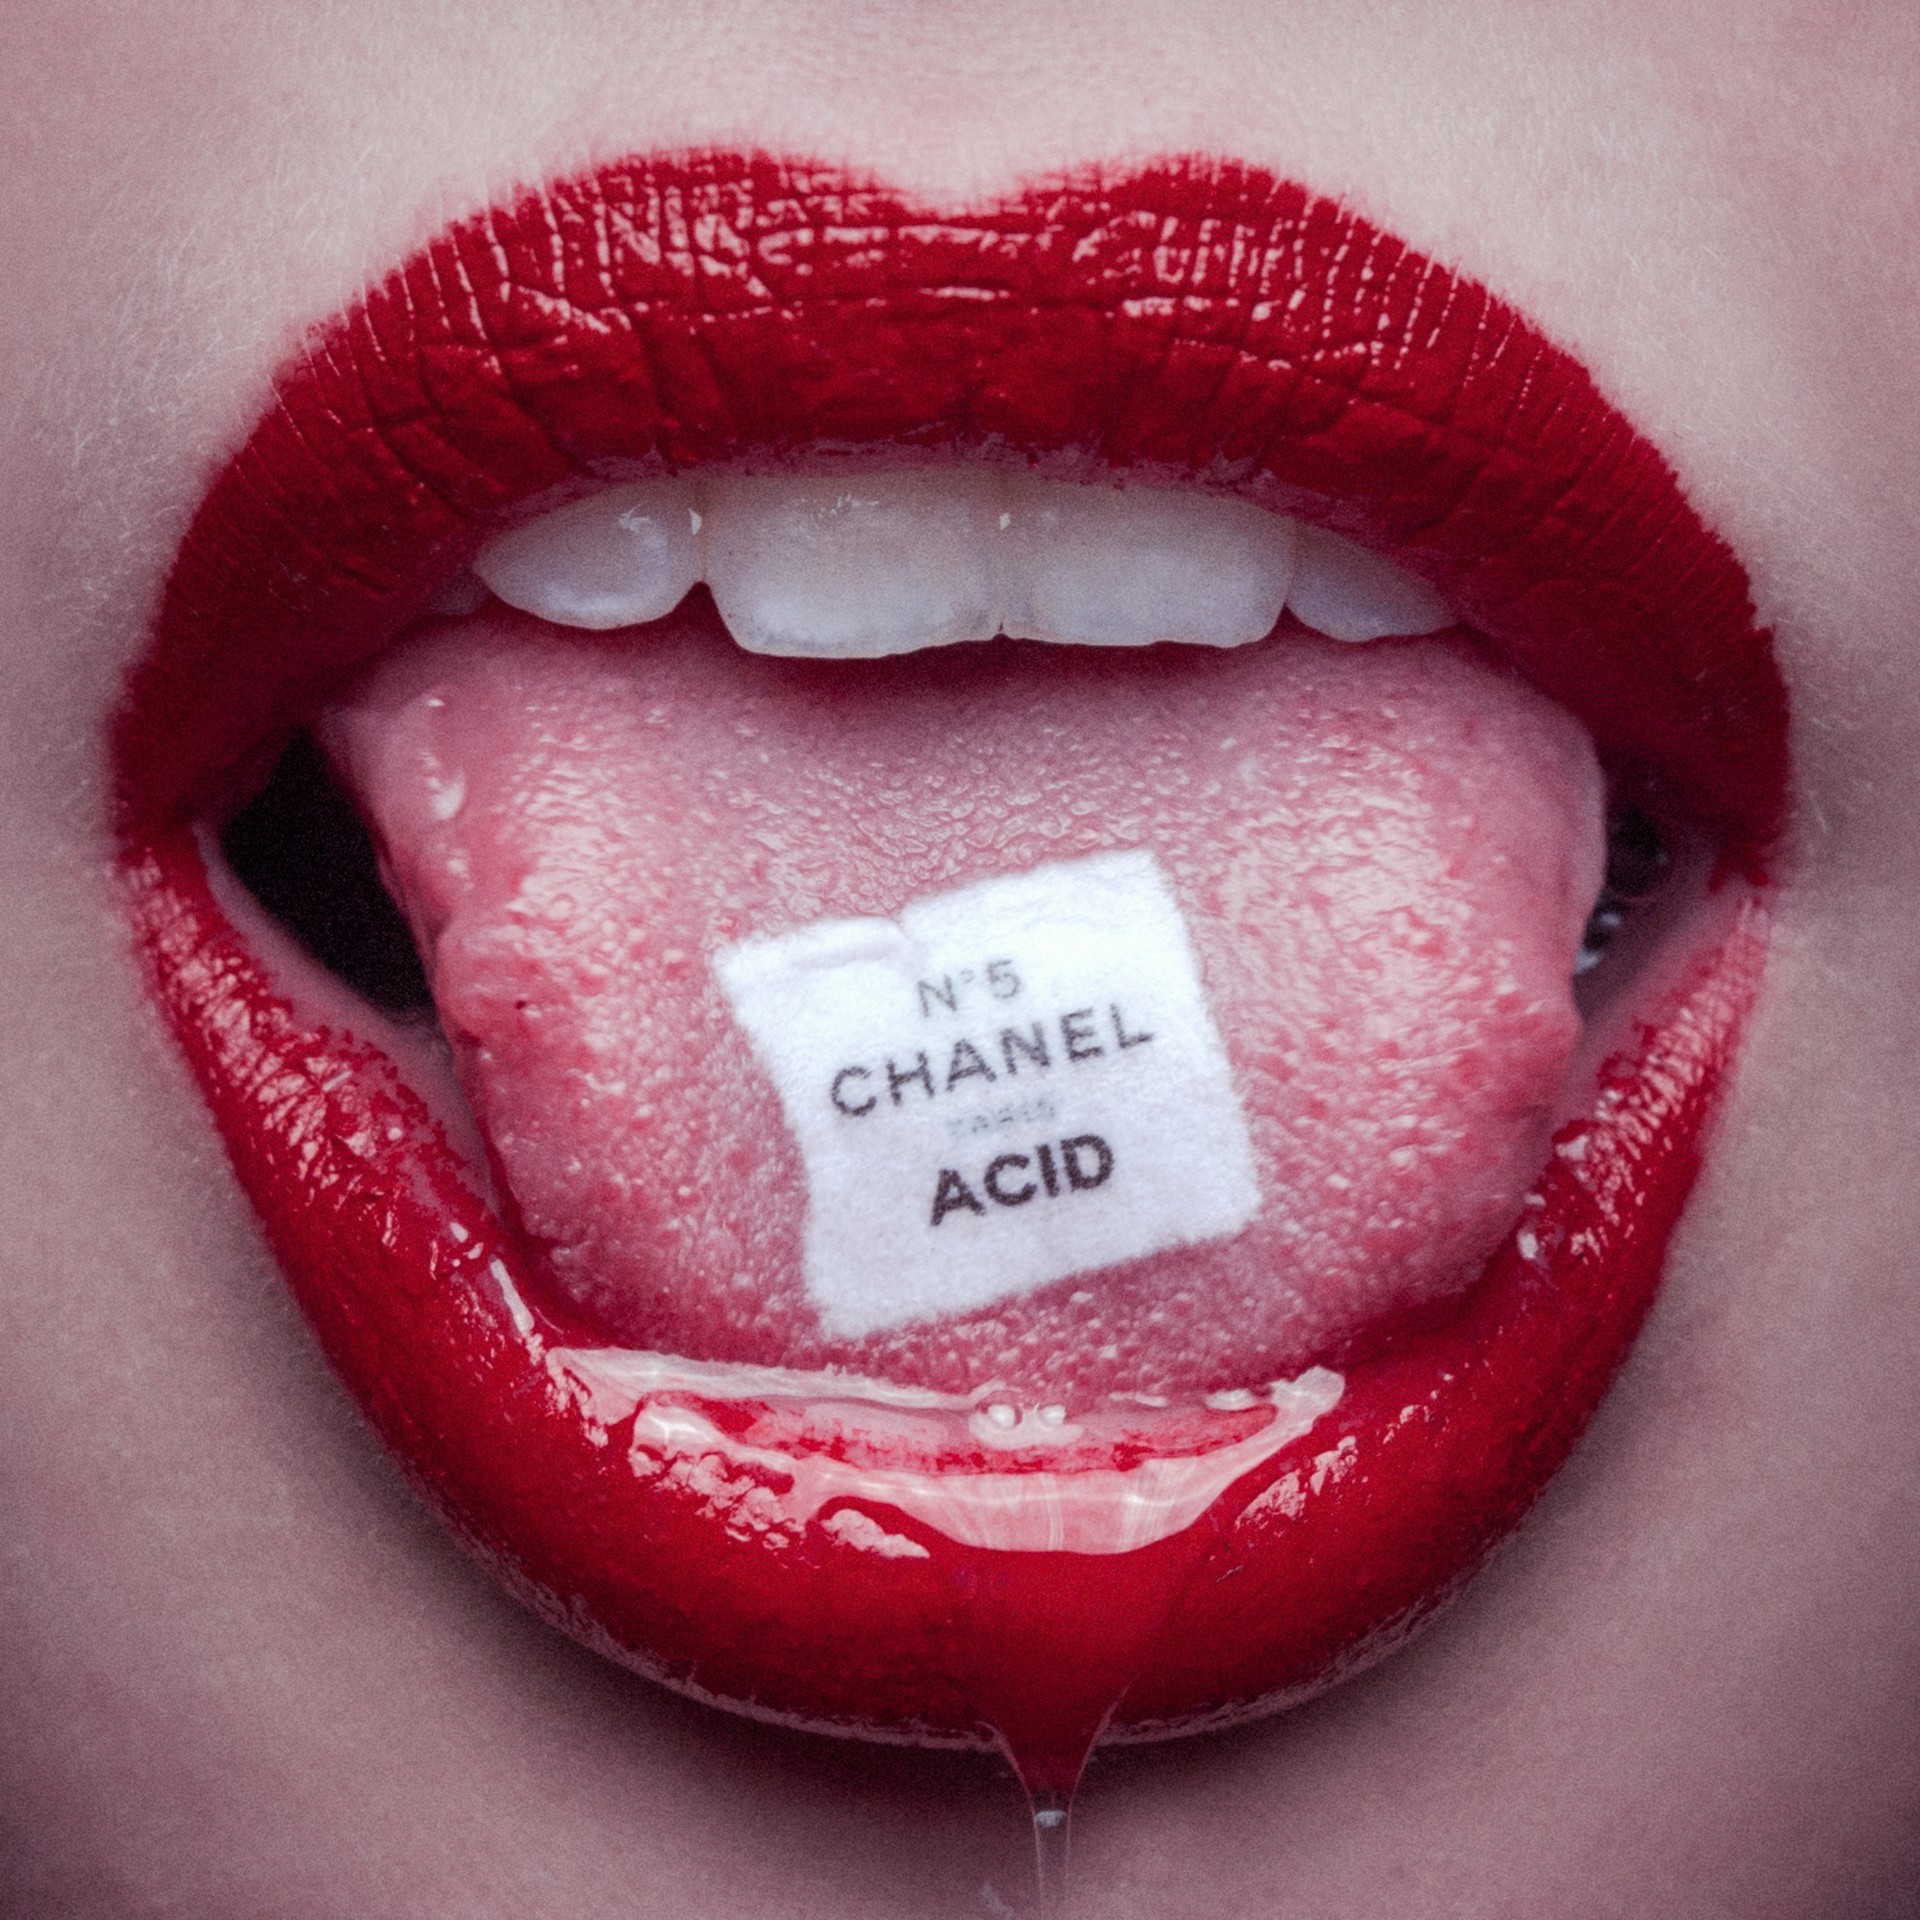 Chanel Acid by Tyler Shields